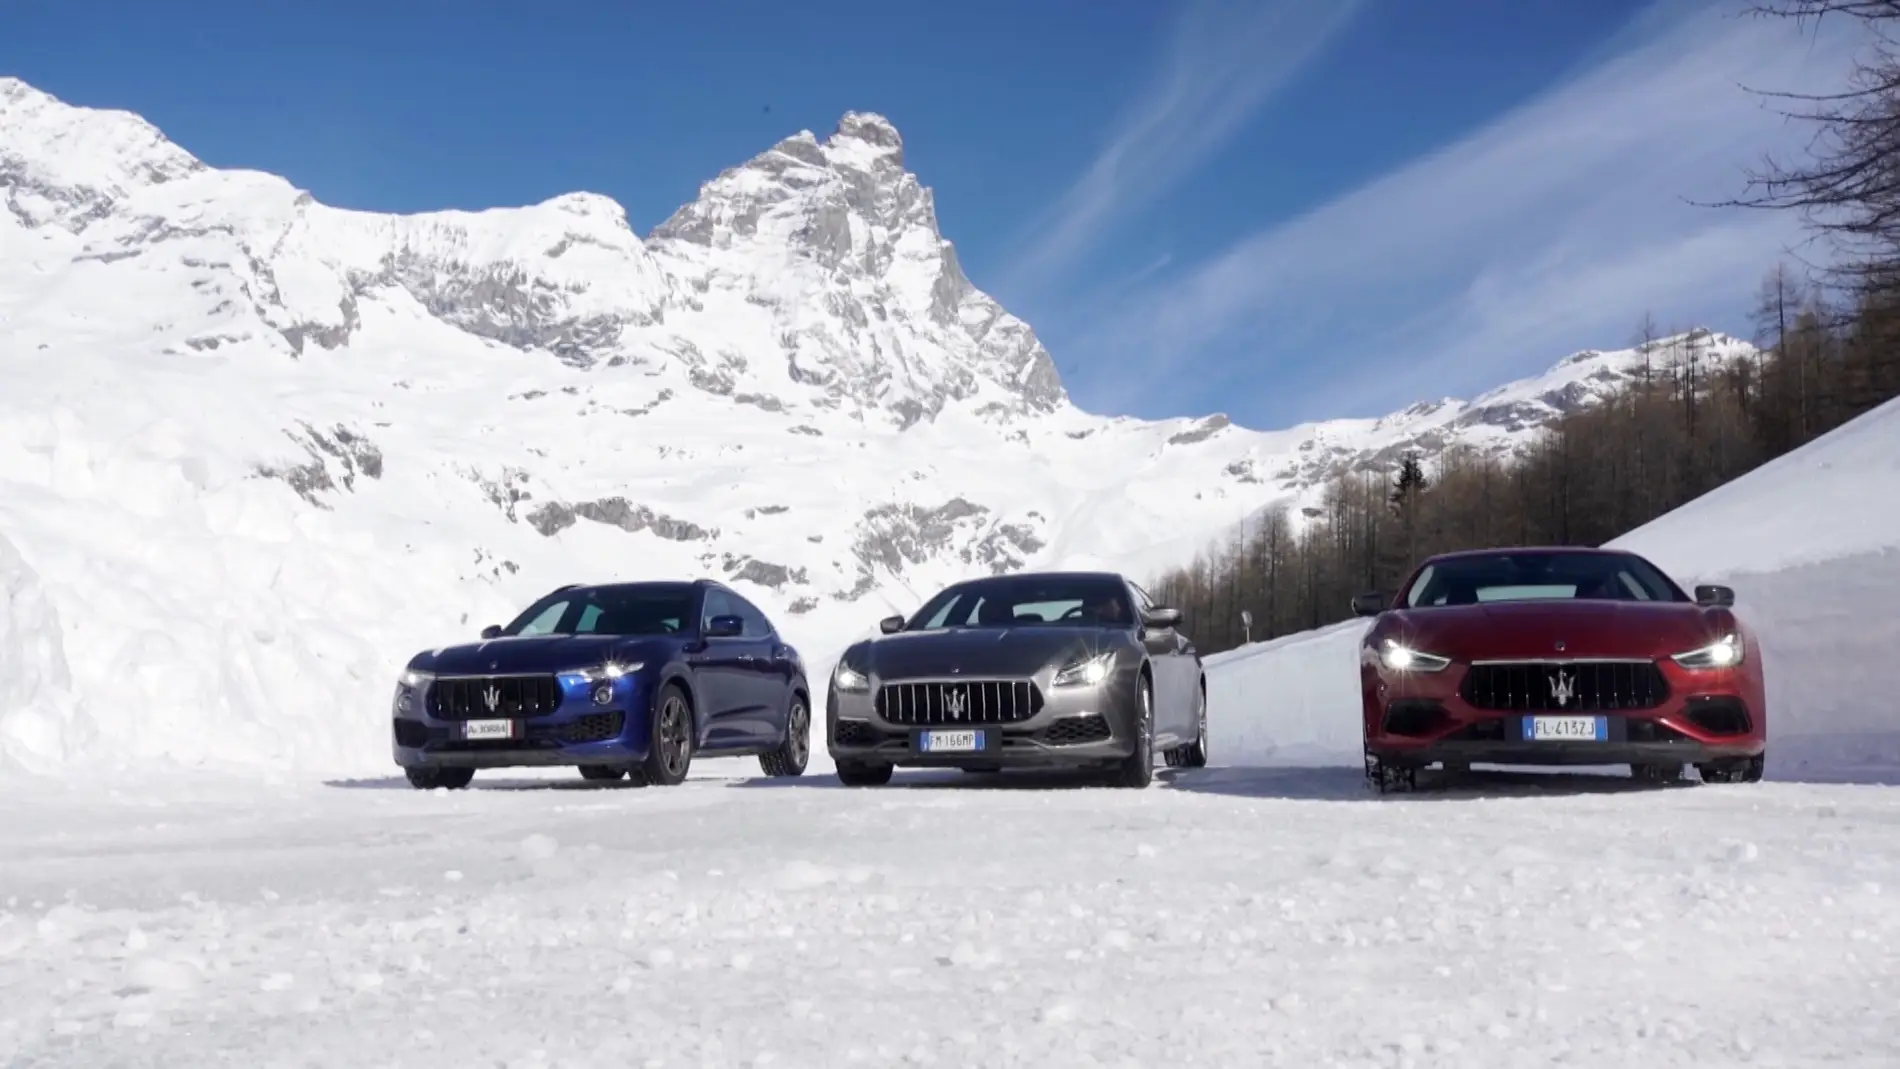 Probamos sobre la nieve de los Alpes la gama Q4 de Maserati: Ghibli, Quattroporte y Levante - Centímetros Cúbicos